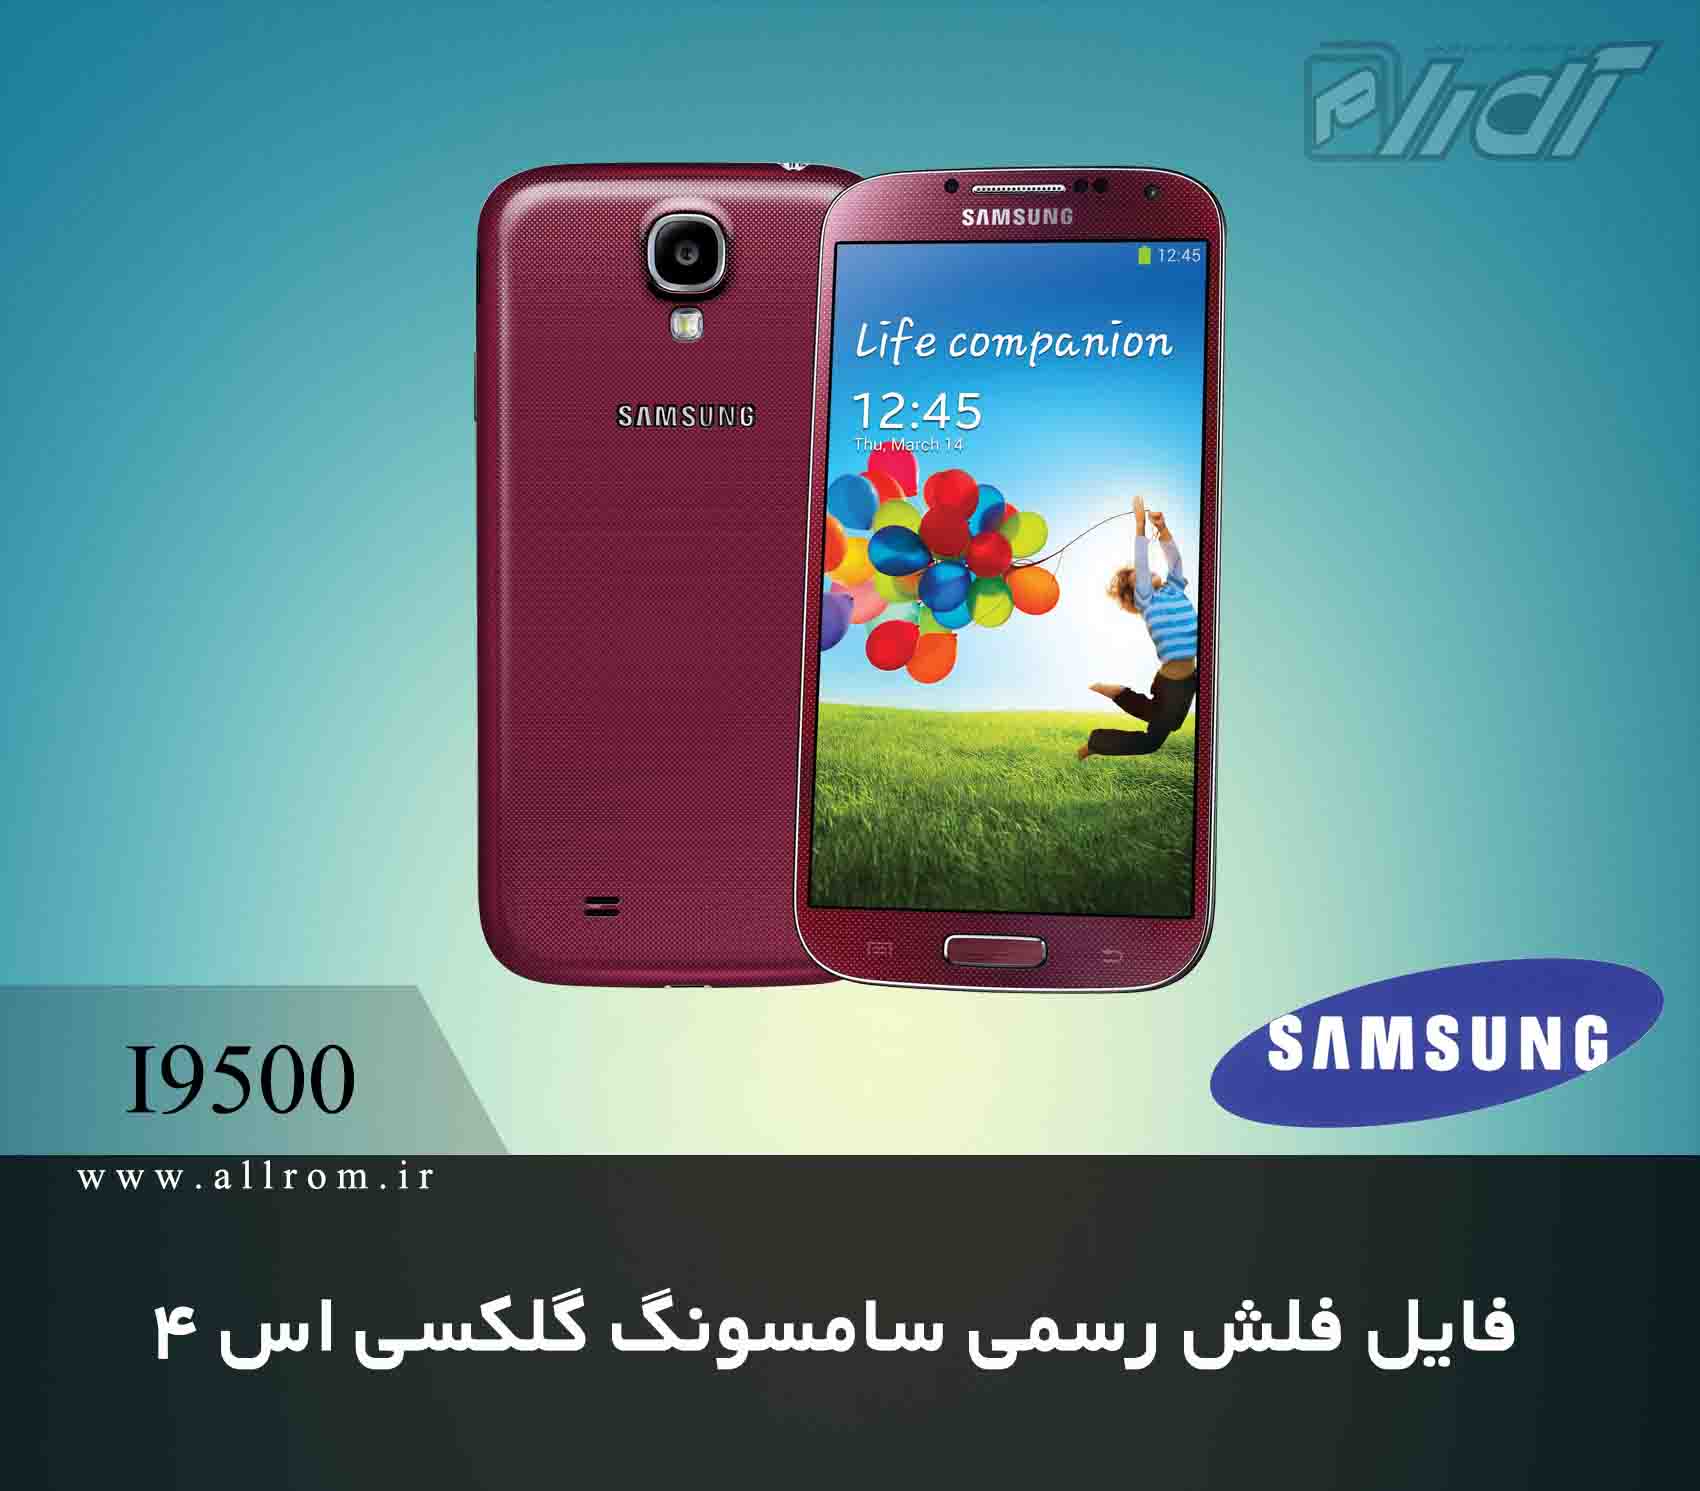 دانلود رام فایل کامبینیشن Samsung Galaxy S4 I9500